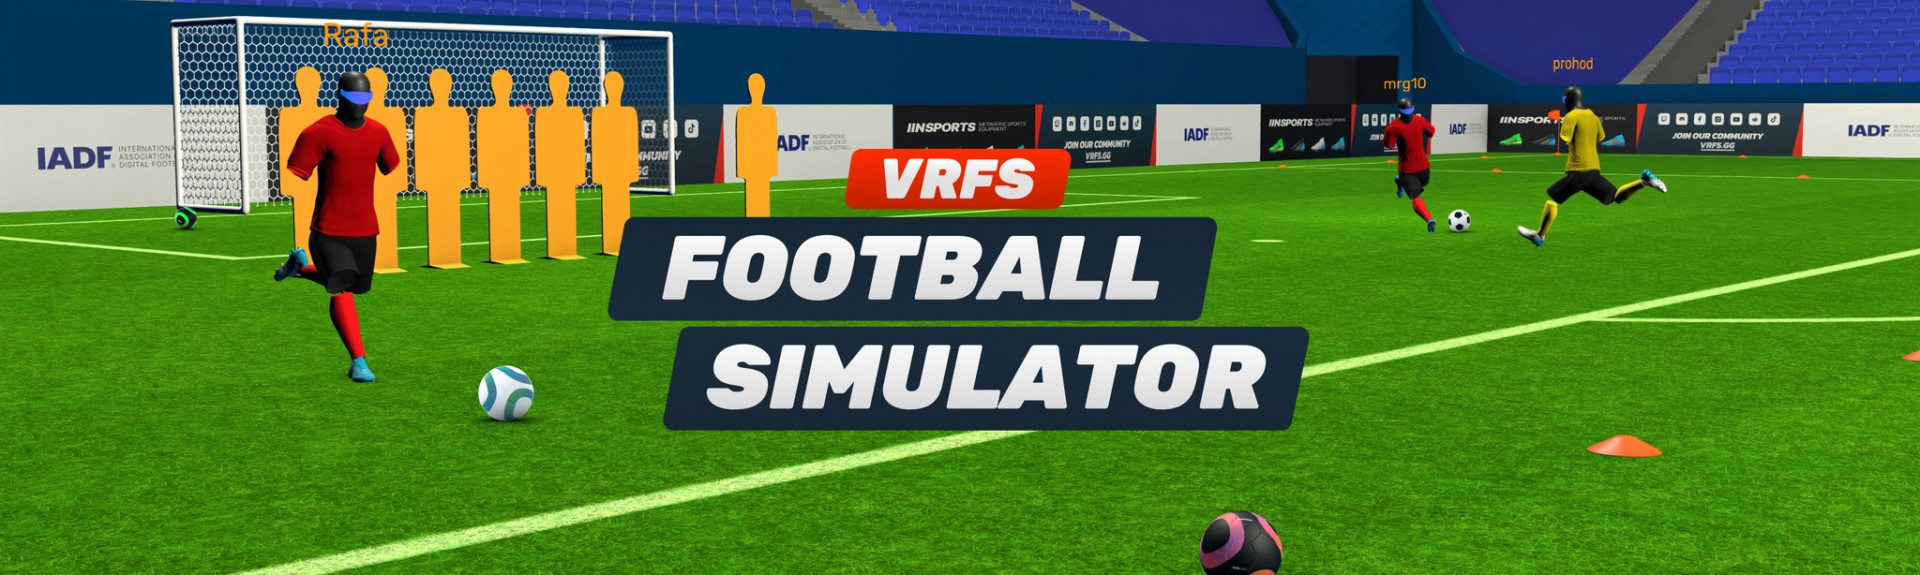 VRFS - Football (soccer) simulator